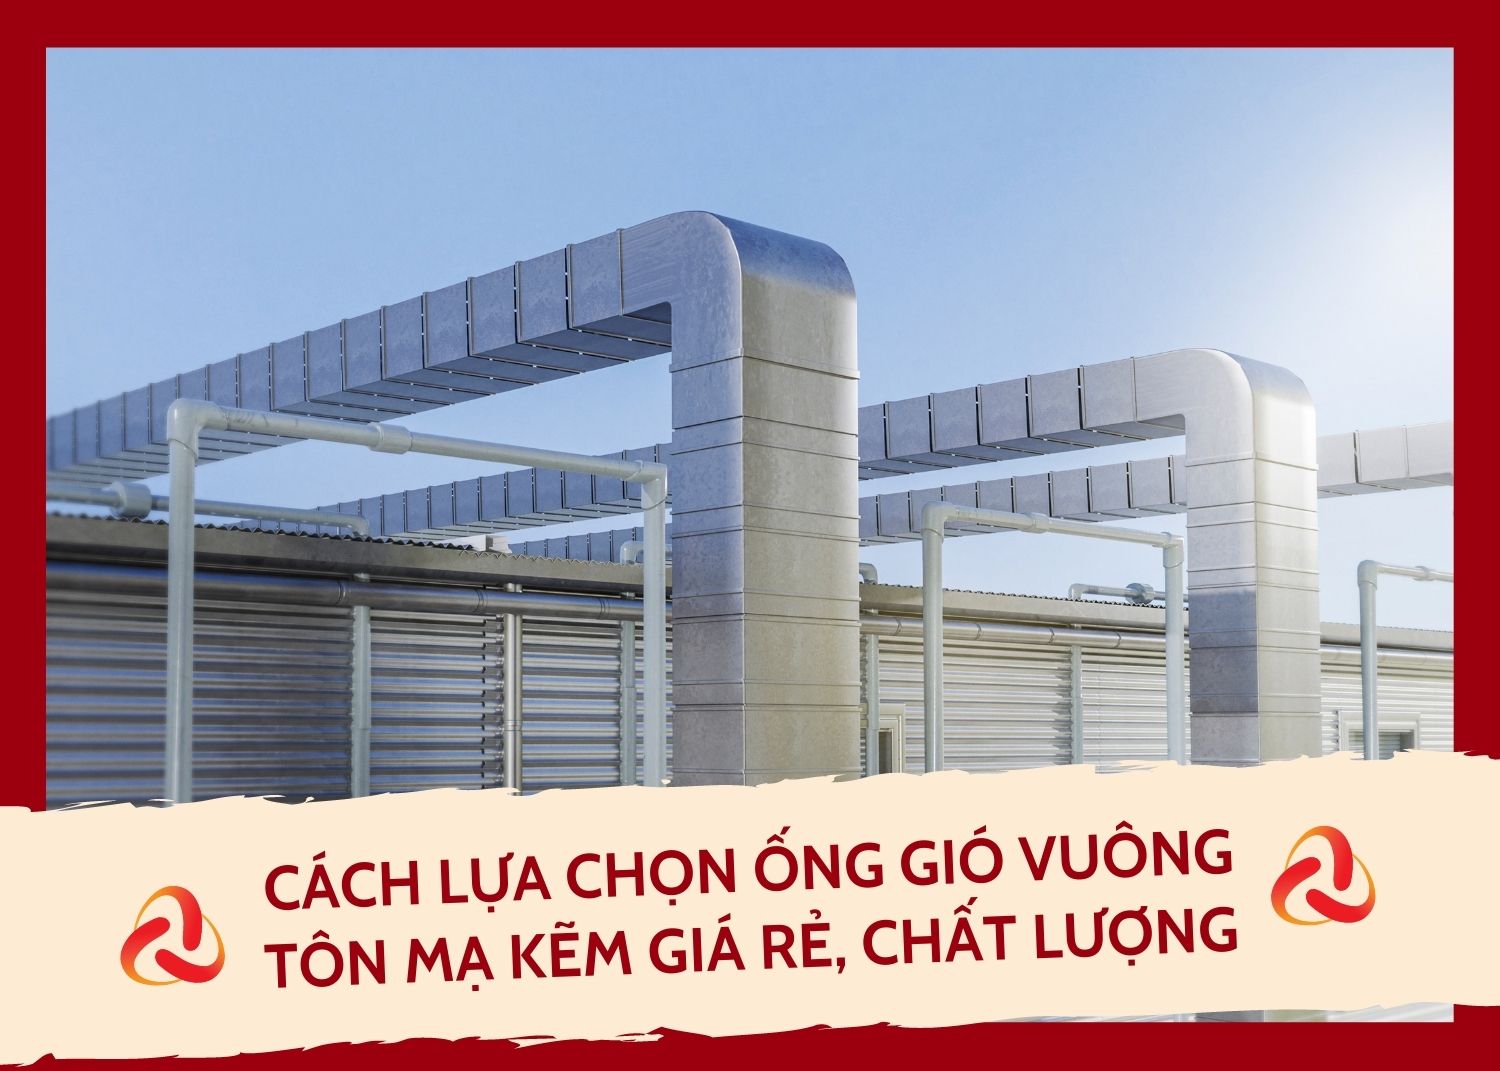 ong-gio-vuong-ton-ma-kem-gia-re-chat-luong-Phuoc-Thanh